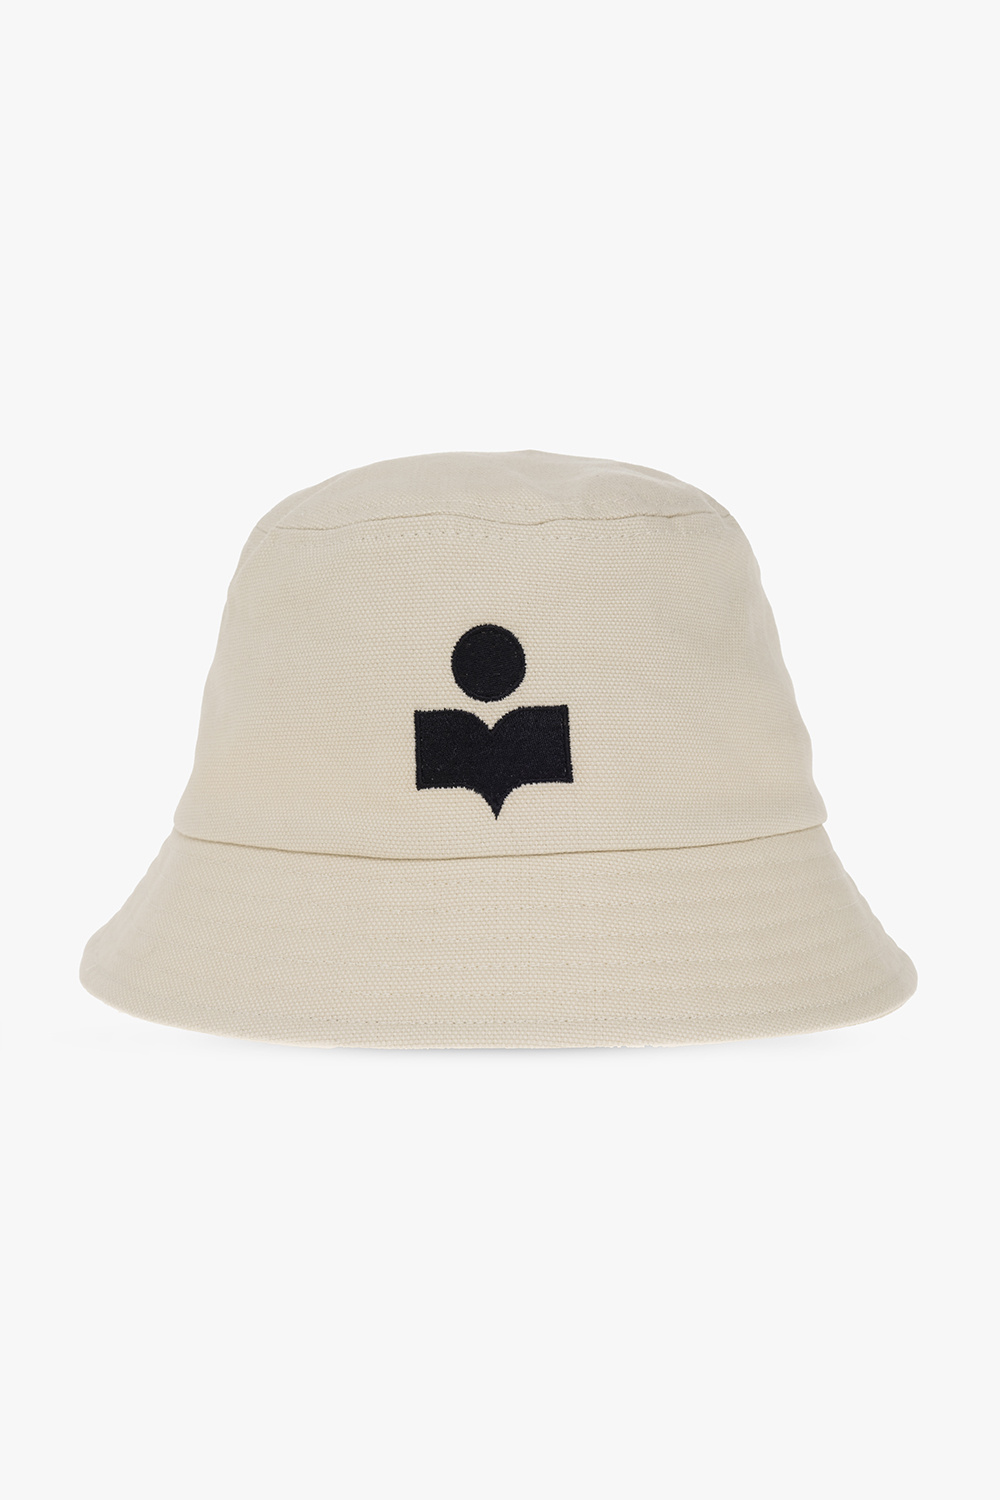 MARANT ‘Haley’ bucket hat